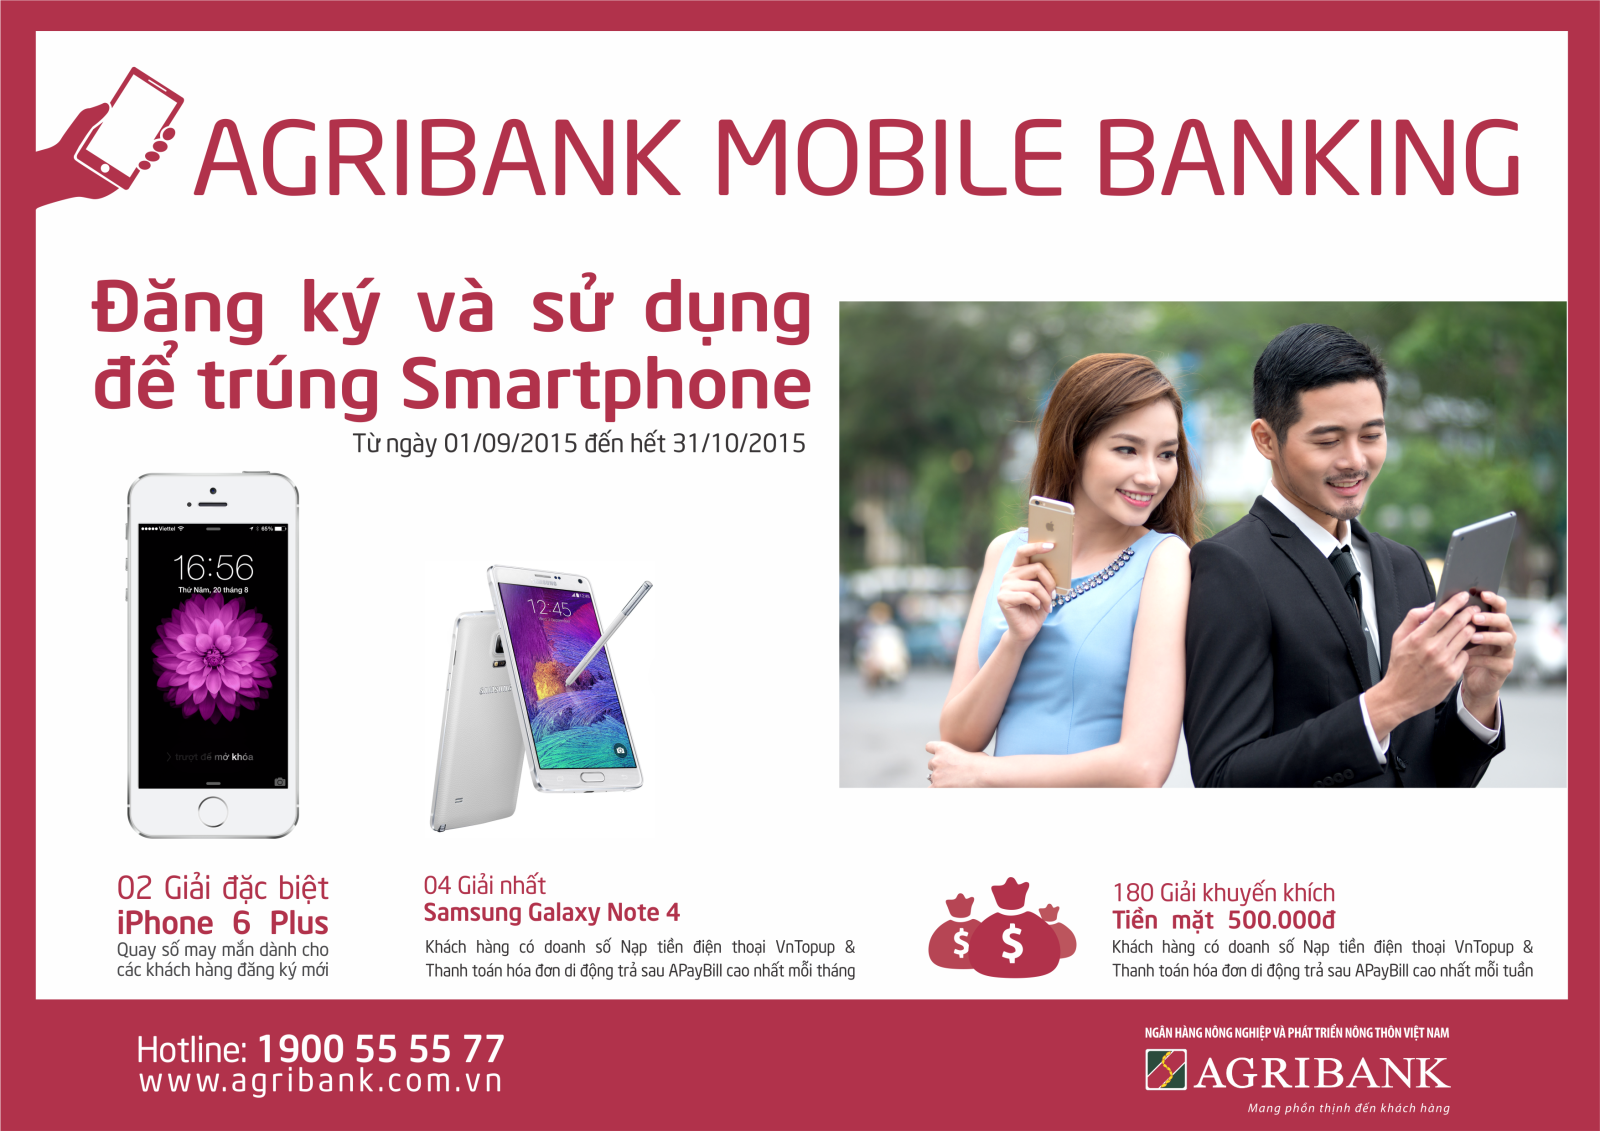 Danh sách khách hàng trúng thưởng chương trình "Đăng ký và sử dụng ngay để trúng Smartphone với Agribank Mobile Banking"